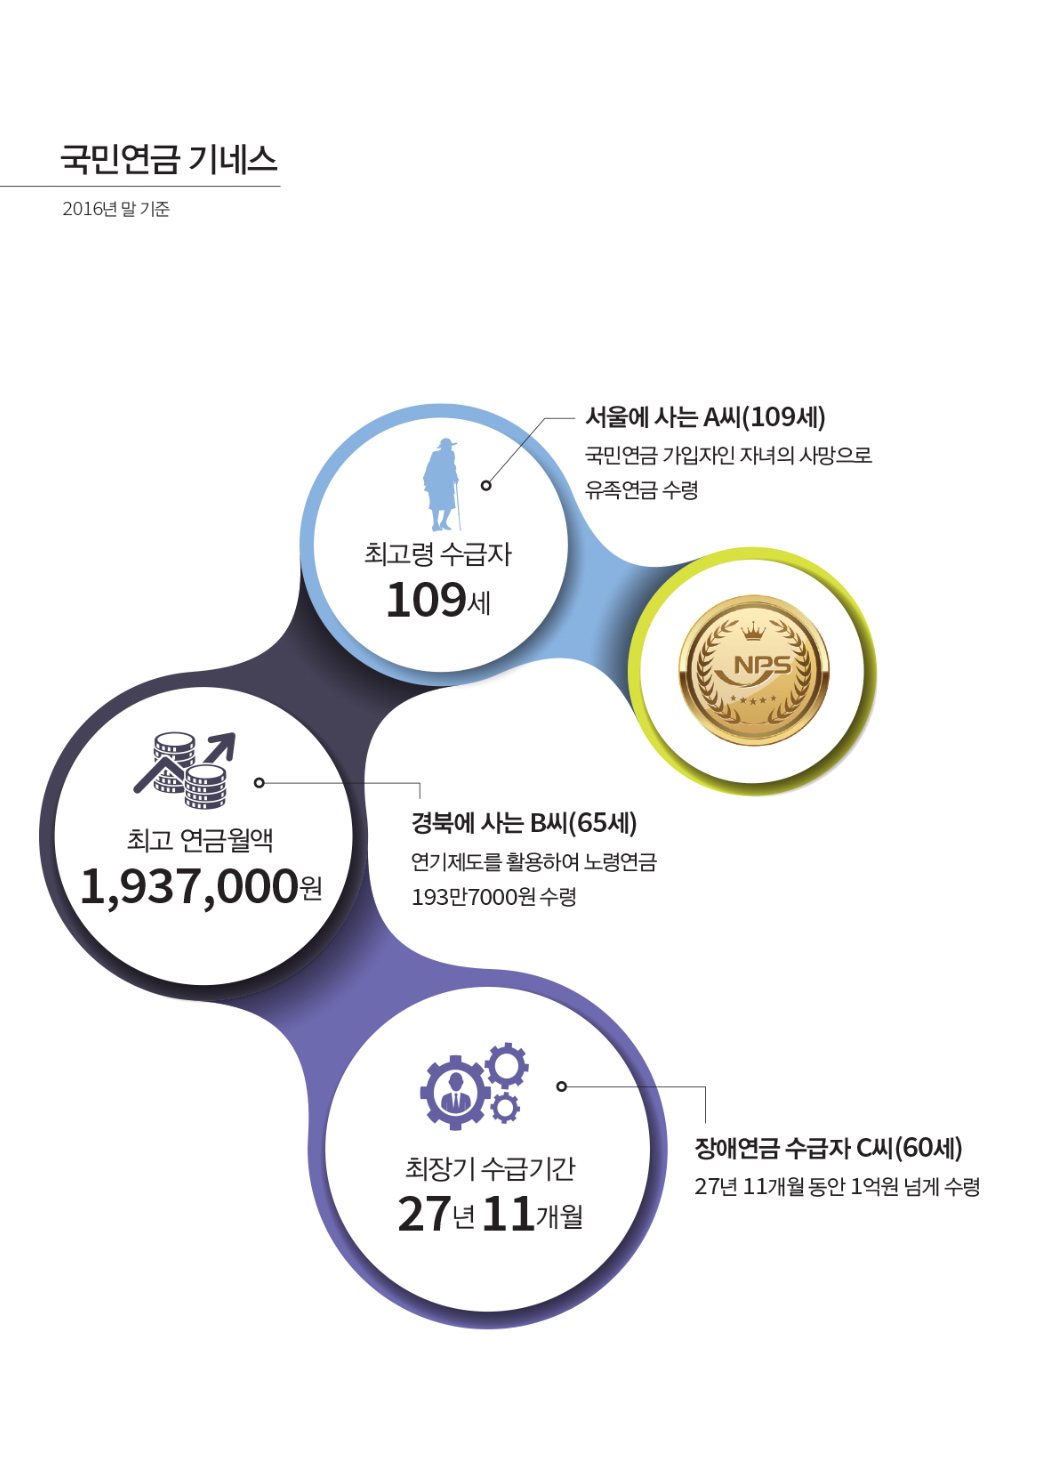 국민연금 기네스 2016년 말 기준 최고령 수급자  109세 서울에 사는 A씨(109세) 국민연금 가입자인 자녀의 사망으로 유족연금 수령 최고 연금월액 1,937,000원 경북에 사는 B씨(65세) 연기제도를 활용하여 노령연금 193만7000원 수령 최장기 수급기간  27년 11개월 장애연금 수급자 C씨(60세) 27년 11개월 동안 1억원 넘게 수령 